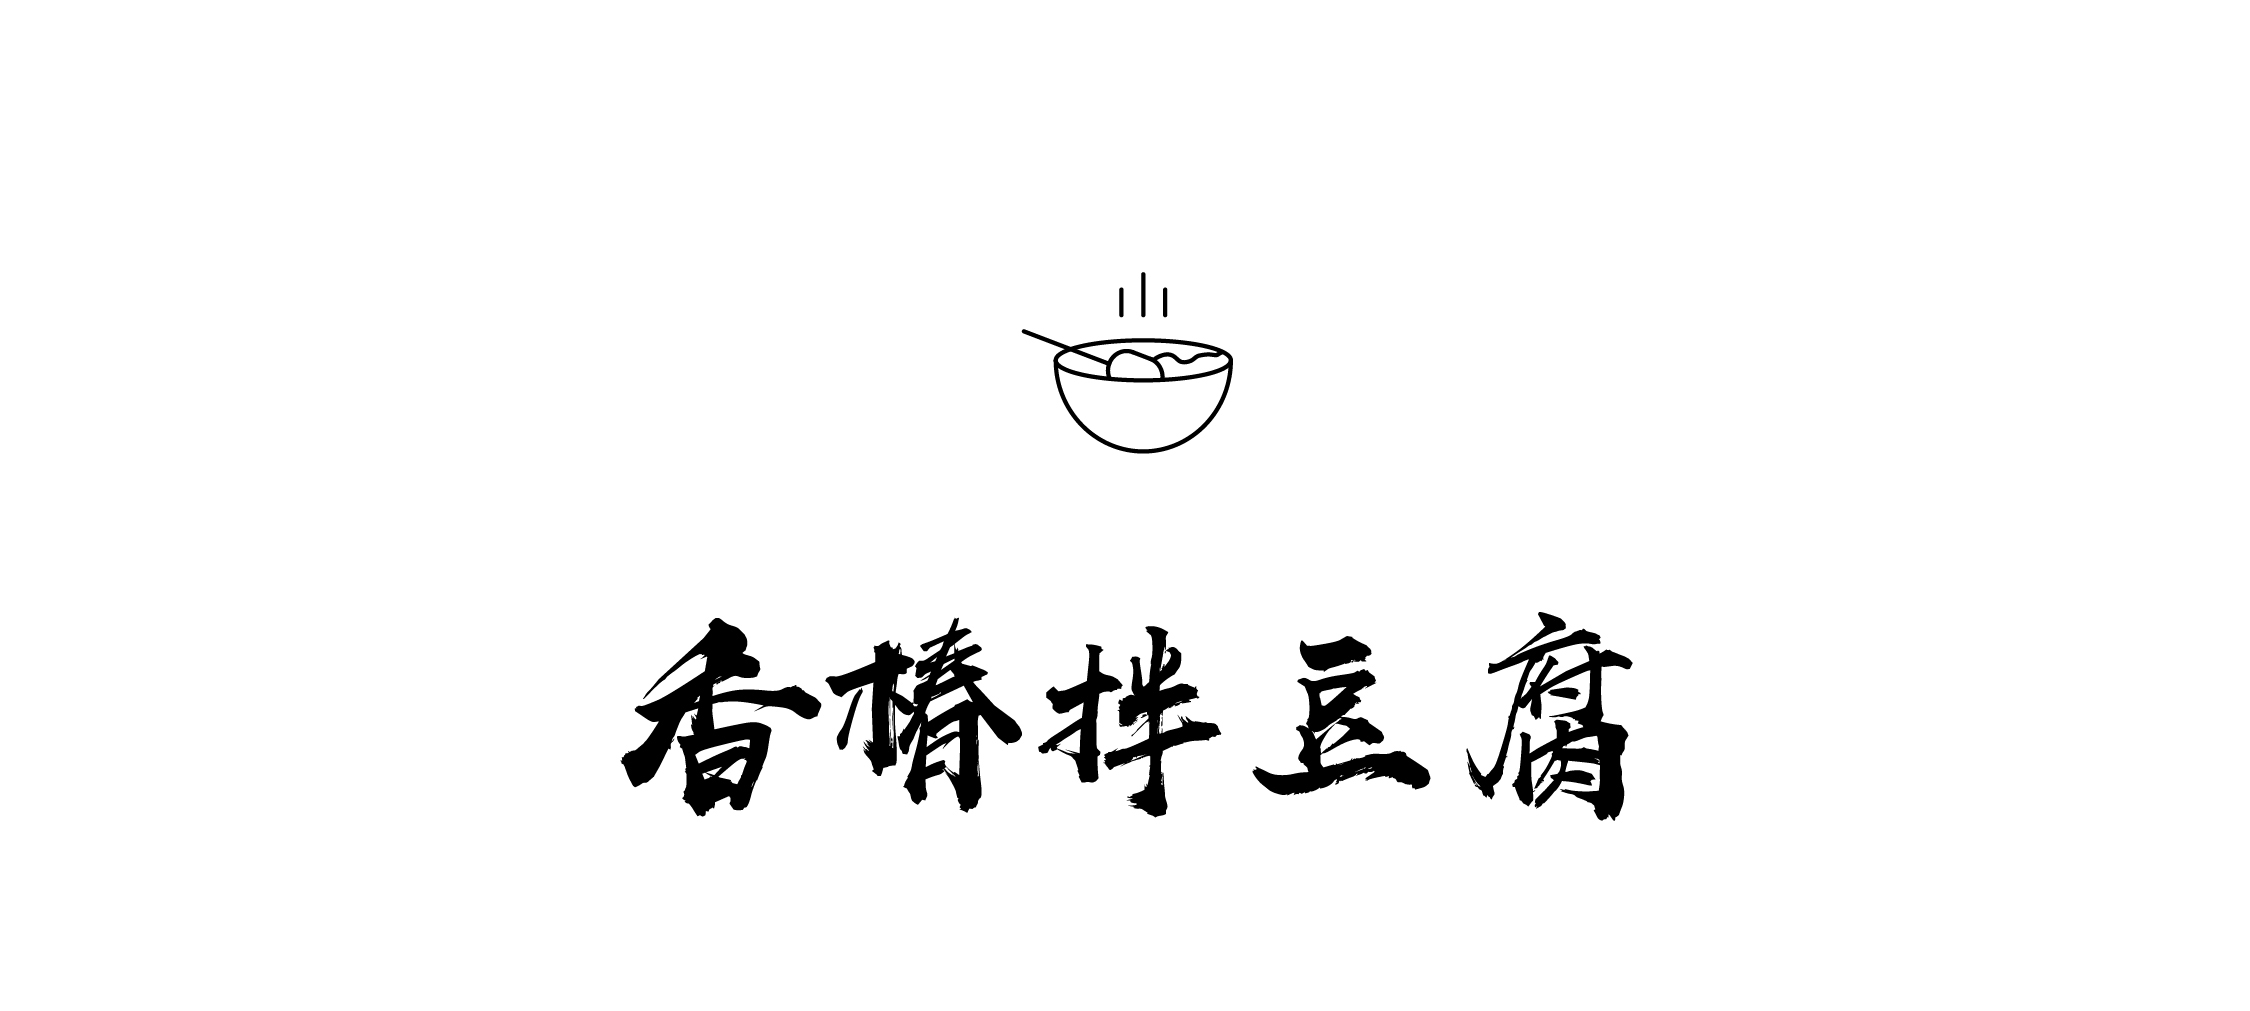 香椿拌豆腐-01_01.jpg